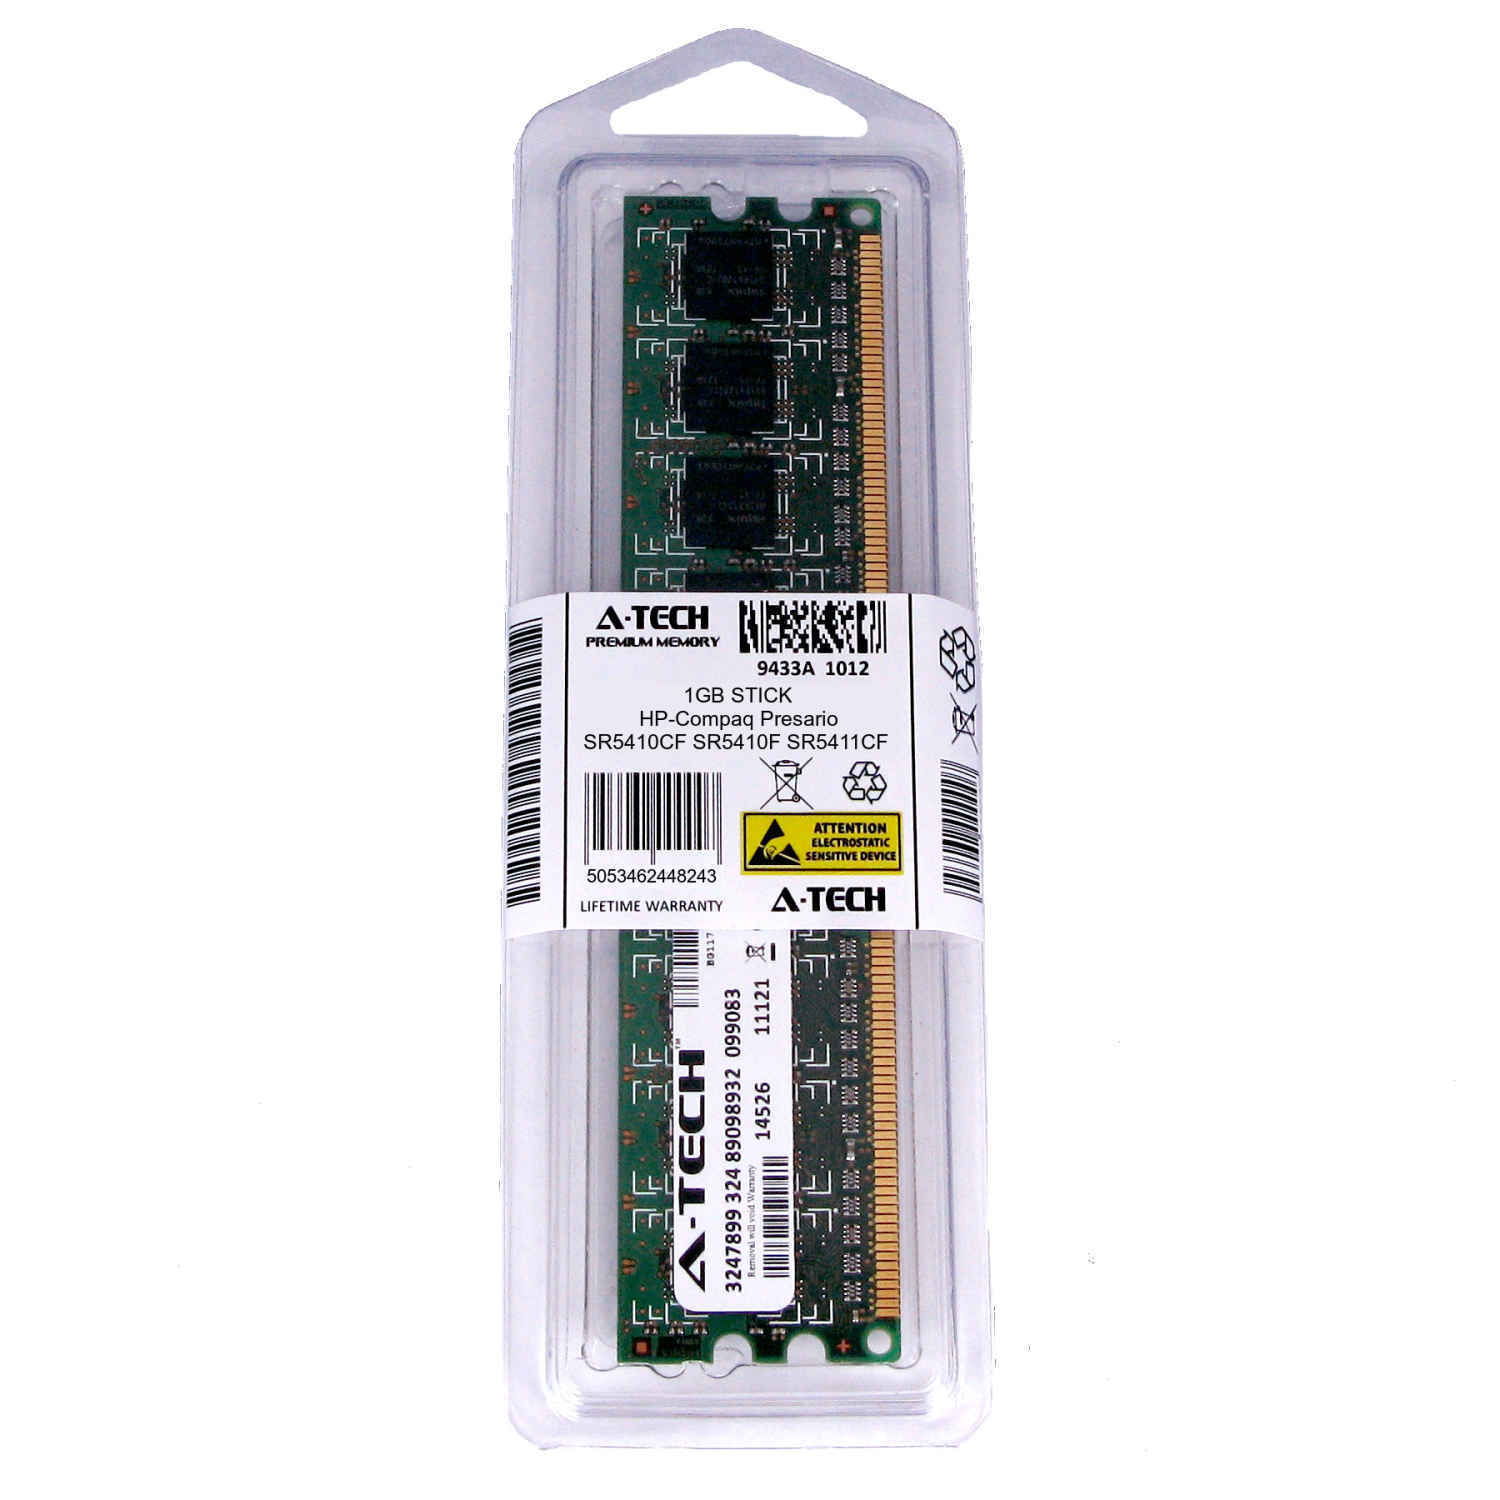 1GB DIMM HP Compaq Presario SR5410CF SR5410F SR5411CF SR5411IT Ram Memory